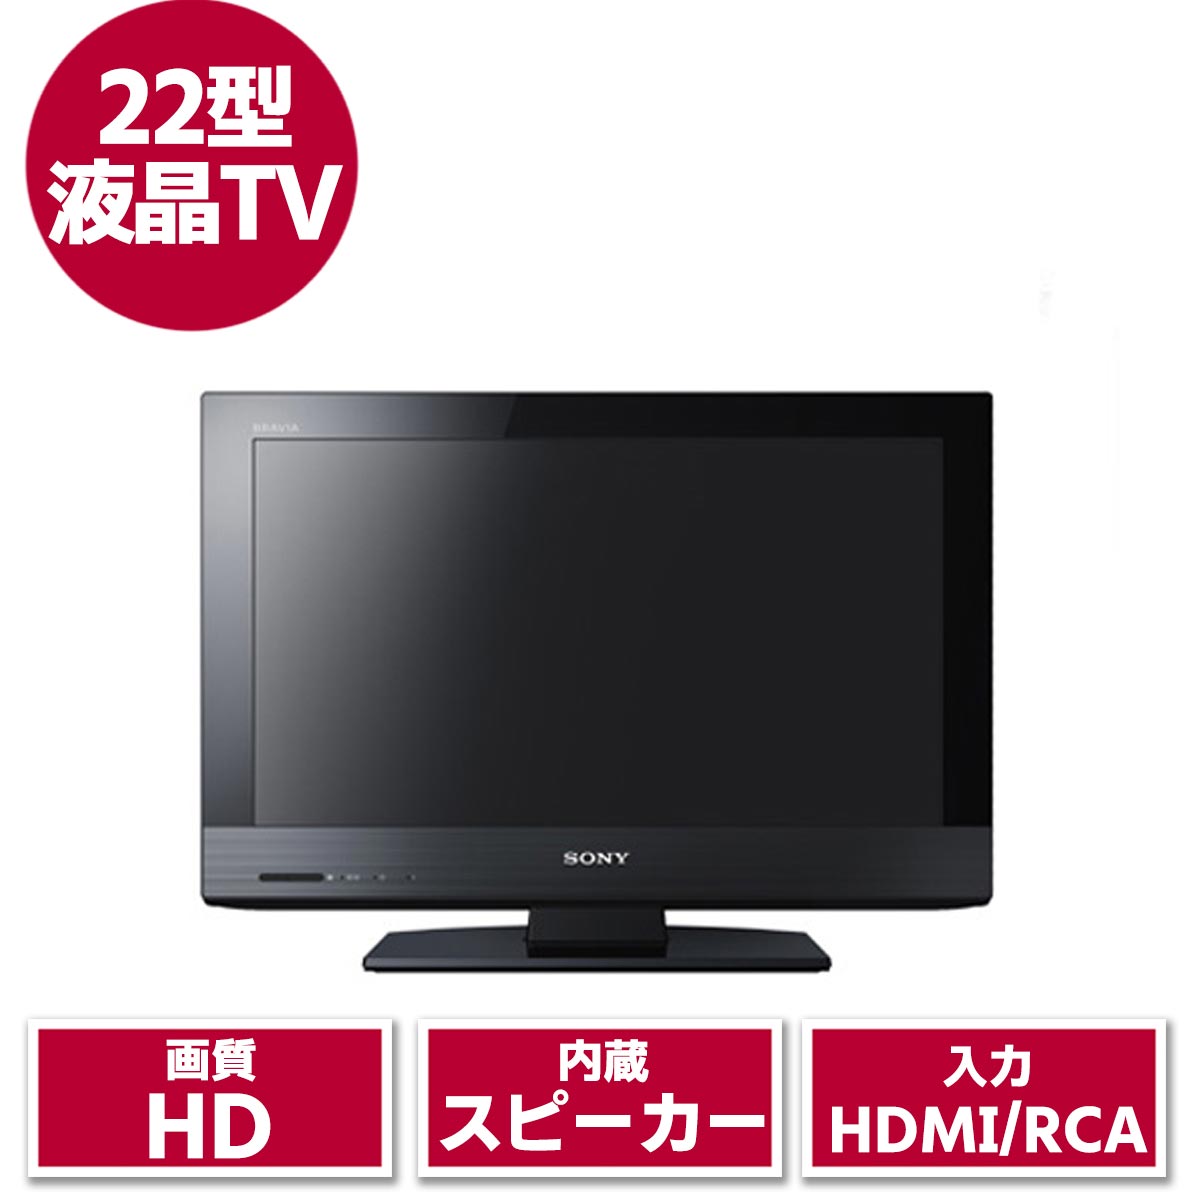 22型液晶テレビ(SONY)